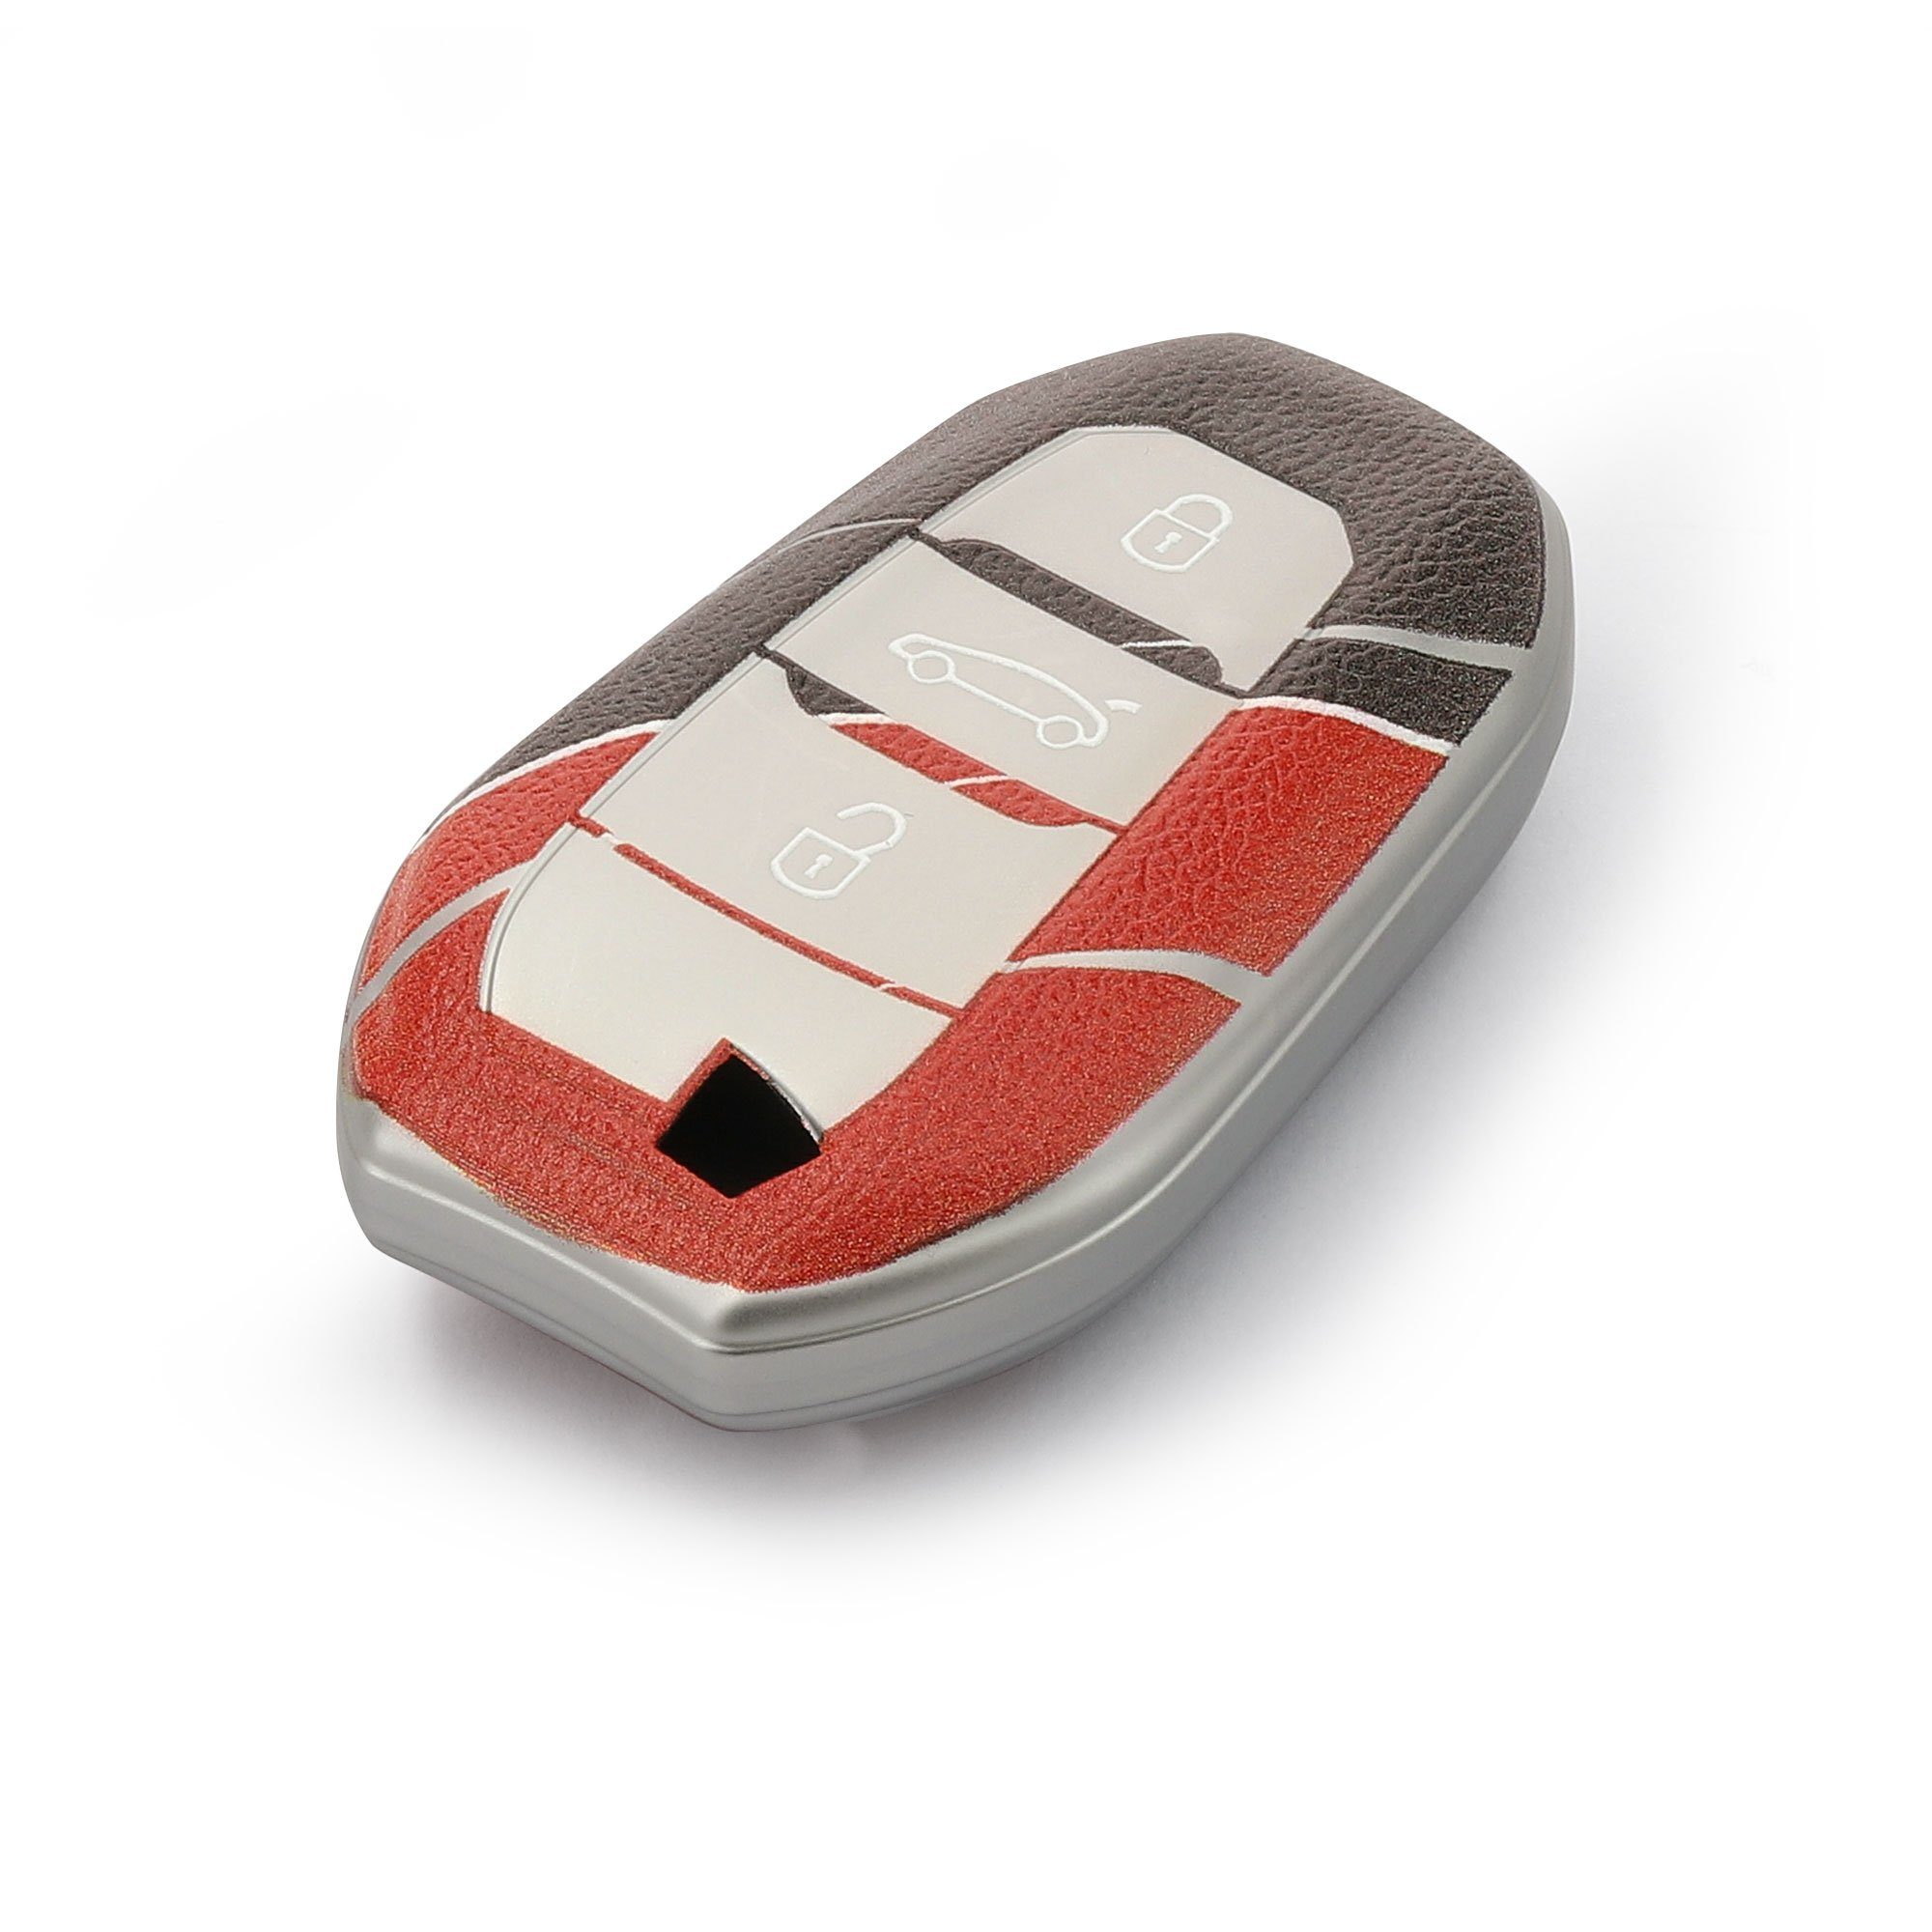 Grau Autoschlüssel für kwmobile Citroen, Schlüsselhülle TPU Peugeot Hülle Schlüsseltasche Schutzhülle Cover